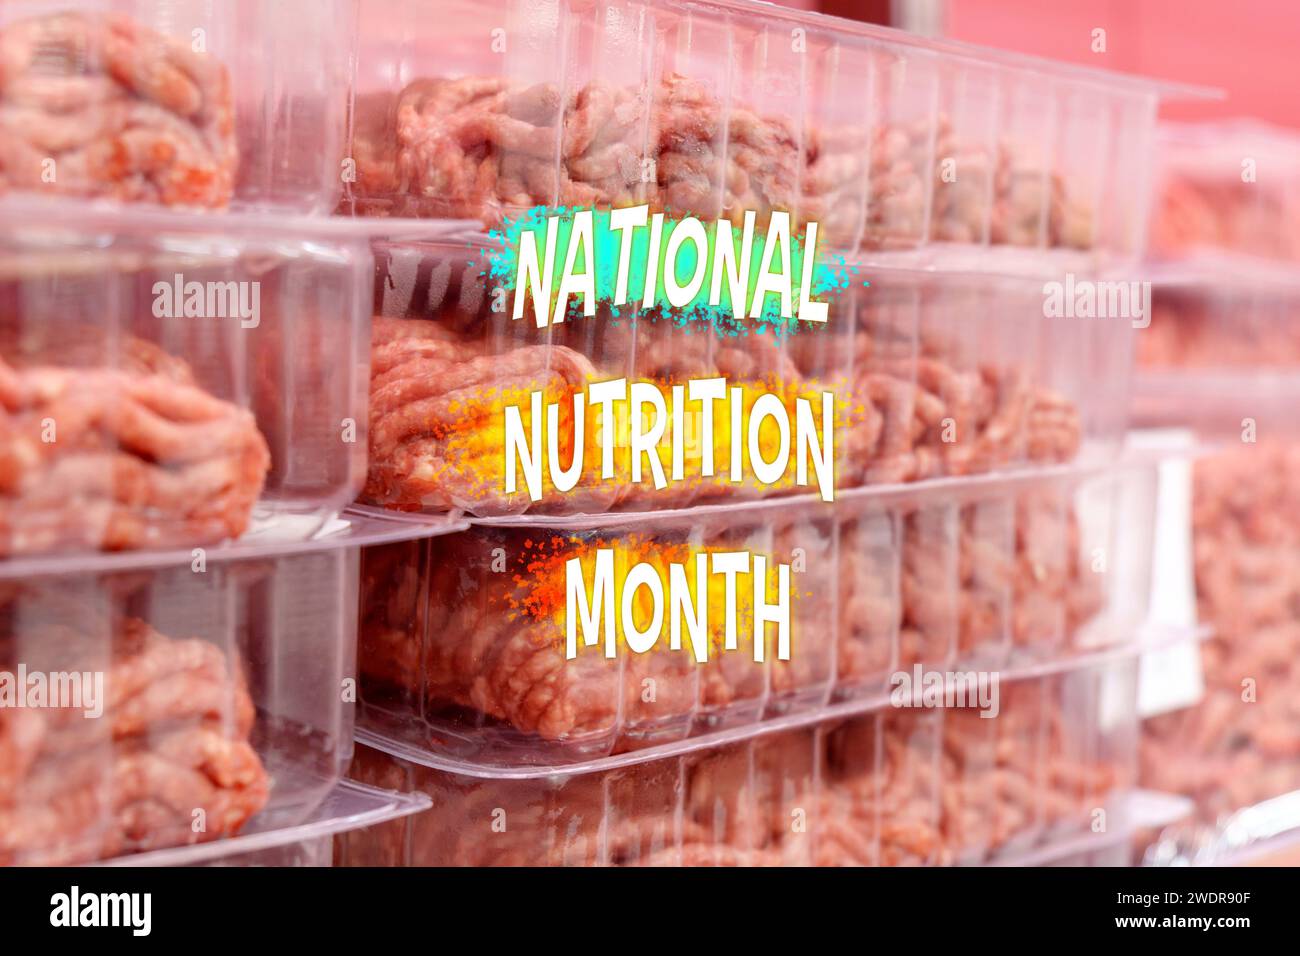 Testo del mese nazionale della nutrizione su una serie di contenitori per snack organizzati in modo ordinato presso un mercato alimentare. Foto Stock